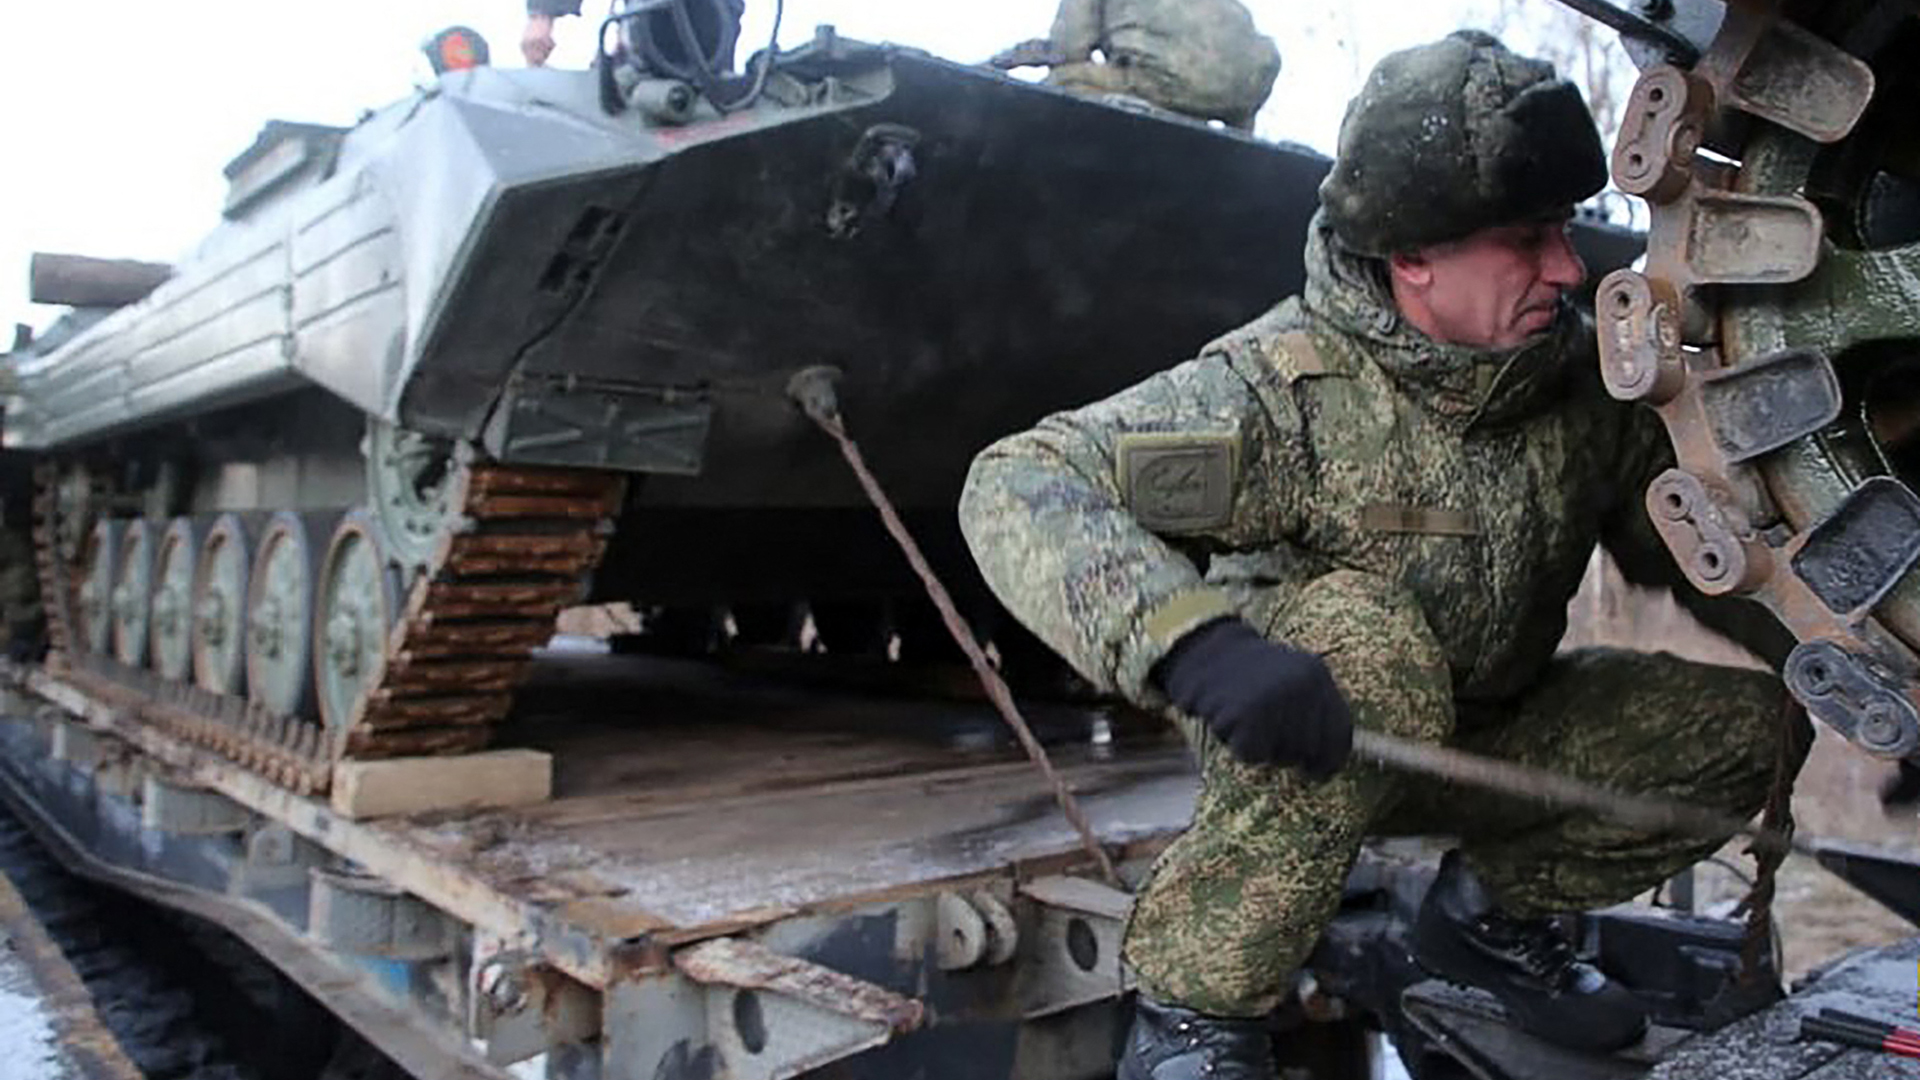 Russisches Militär: "Unberechenbarkeit ist Teil der Strategie"